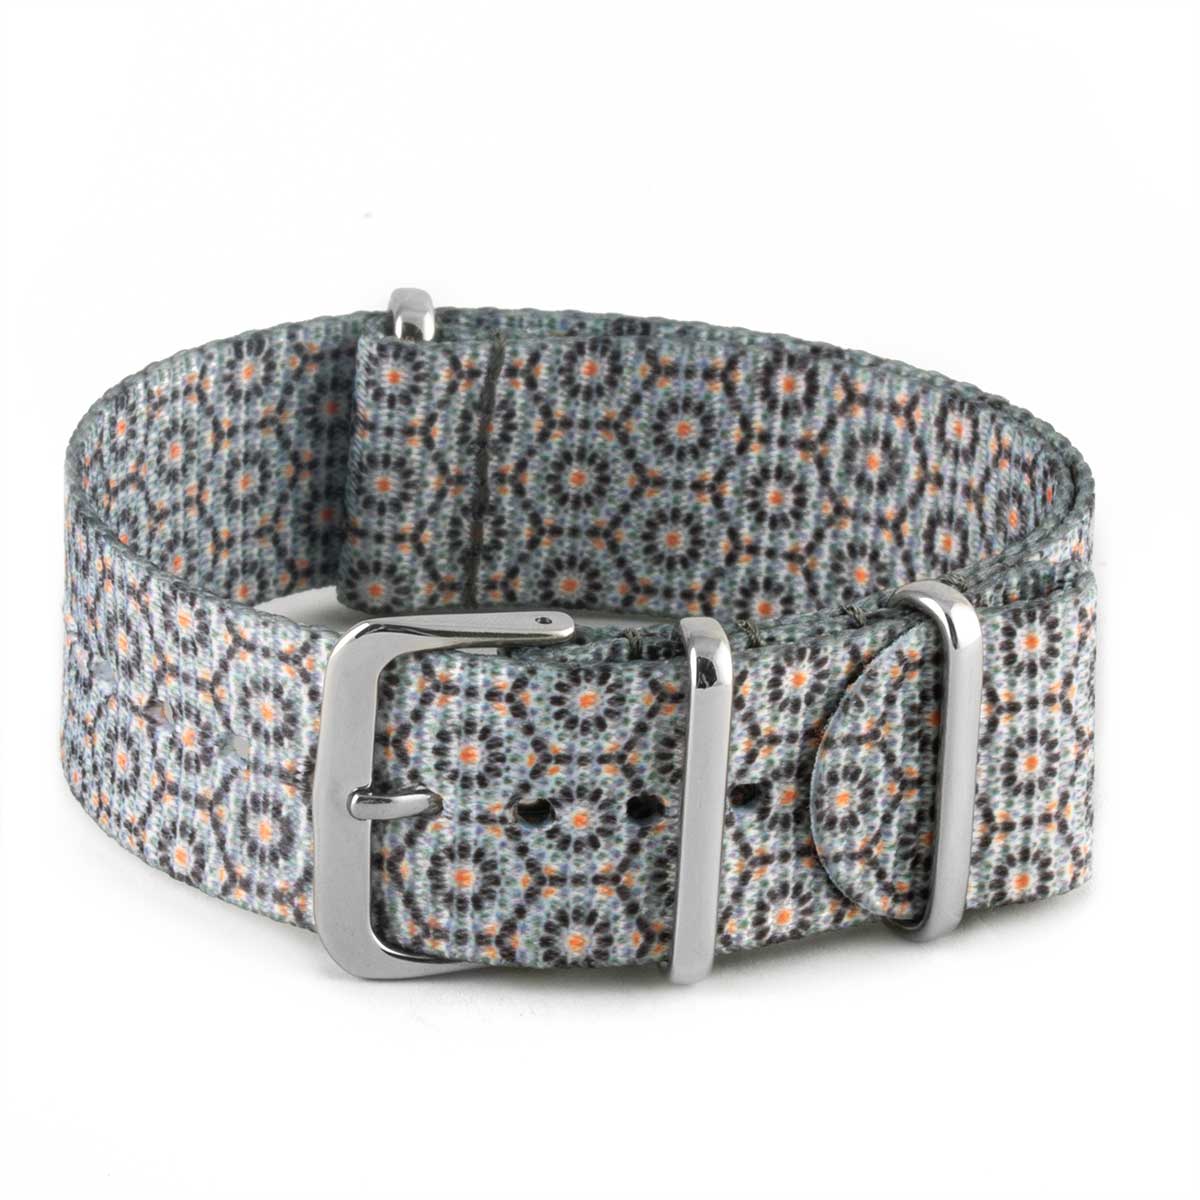 Bracelet pour montre Nato - Nylon / Tissu - Dandy (bleu, gris, rouge, doré) - watch band leather strap - ABP Concept -